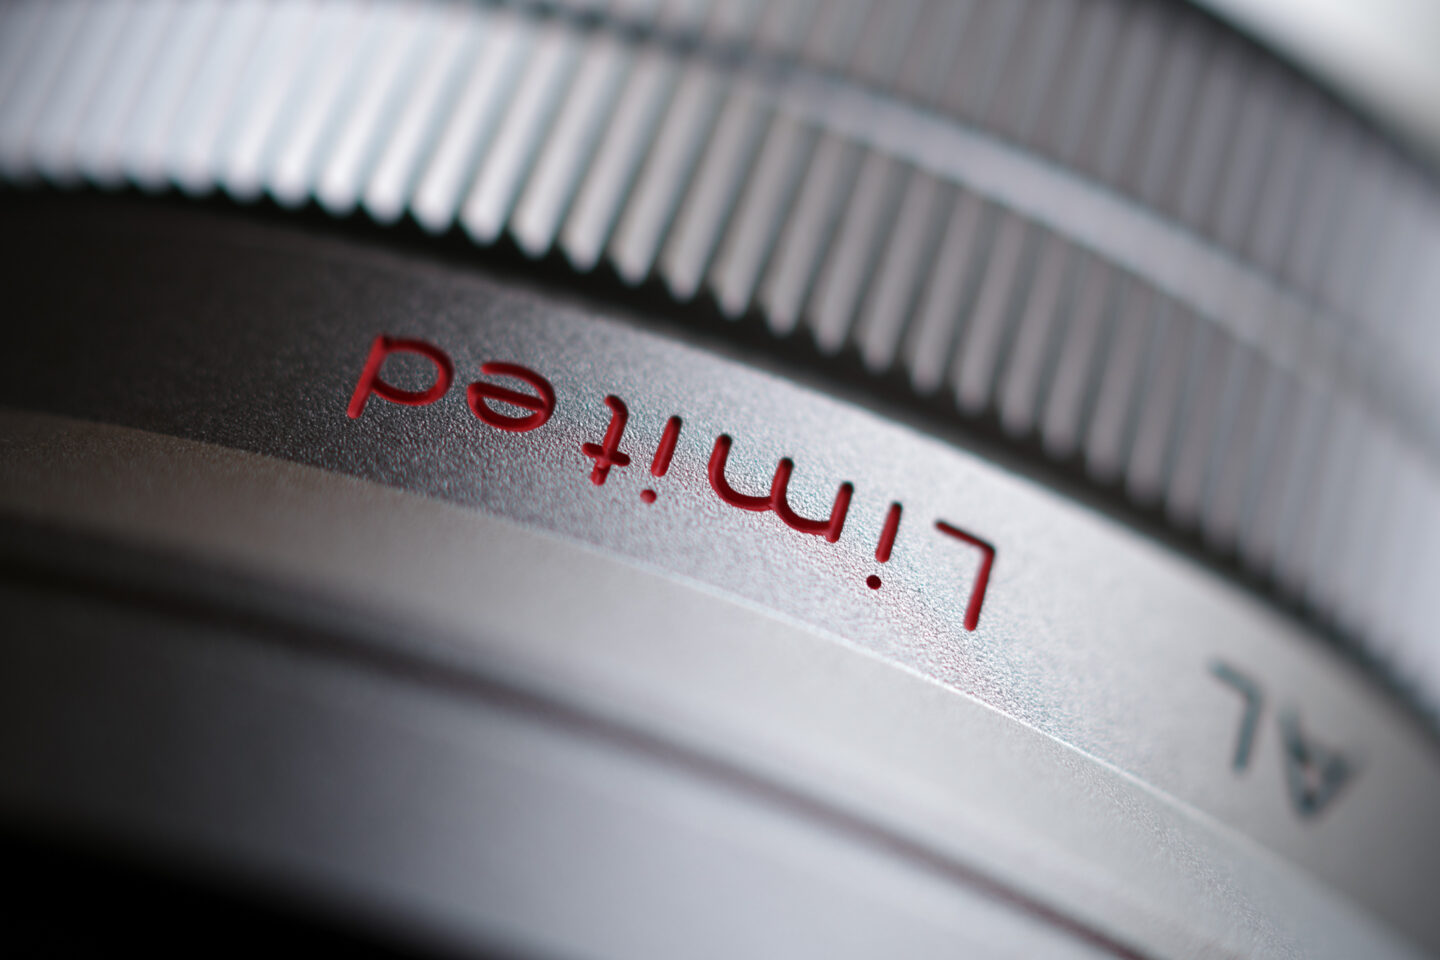 ペンタックス HD PENTAX-DA 35mmF2.8 Macro Limited｜標準レンズとして